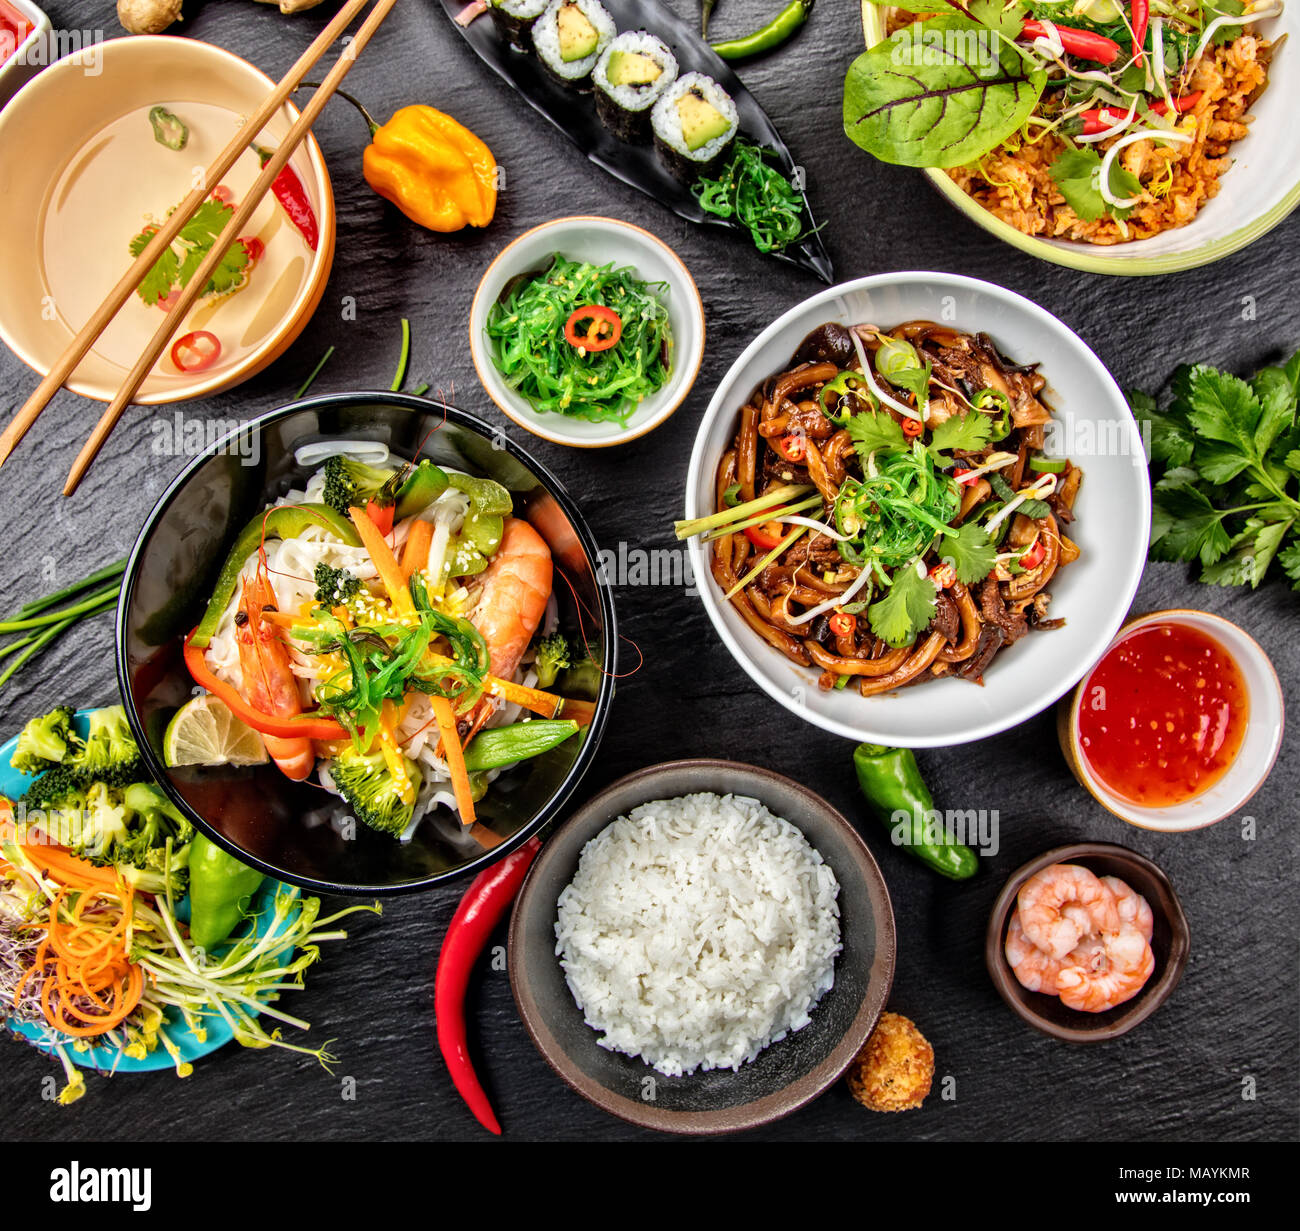 Asiatische Lebensmittel Variation mit vielen Arten von Mahlzeiten. Kari Reis, Nudeln und Gemüse. Ansicht von oben, auf schwarzen Stein serviert. Stockfoto